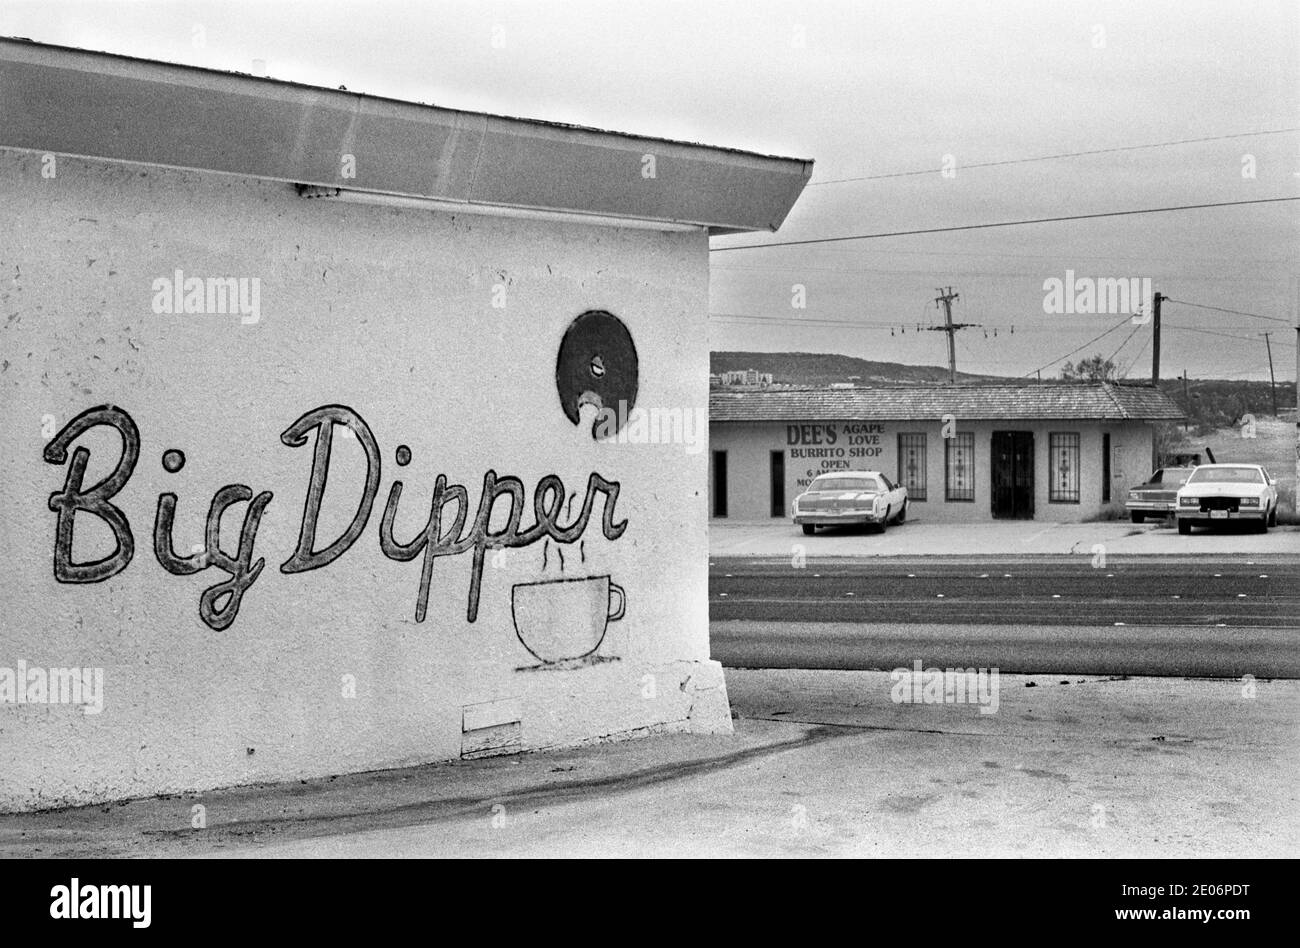 Dig Dipper und Dees Agape Love Burrito Shop, Snyder, Texas 1999. USA der 1990er Jahre. Dig Dipper ist ein typisches amerikanisches Fast Food Restaurant und das christliche Cafe auf der anderen Straßenseite verkauft typisch mexikanisches Fast Food. HOMER SYKES Stockfoto